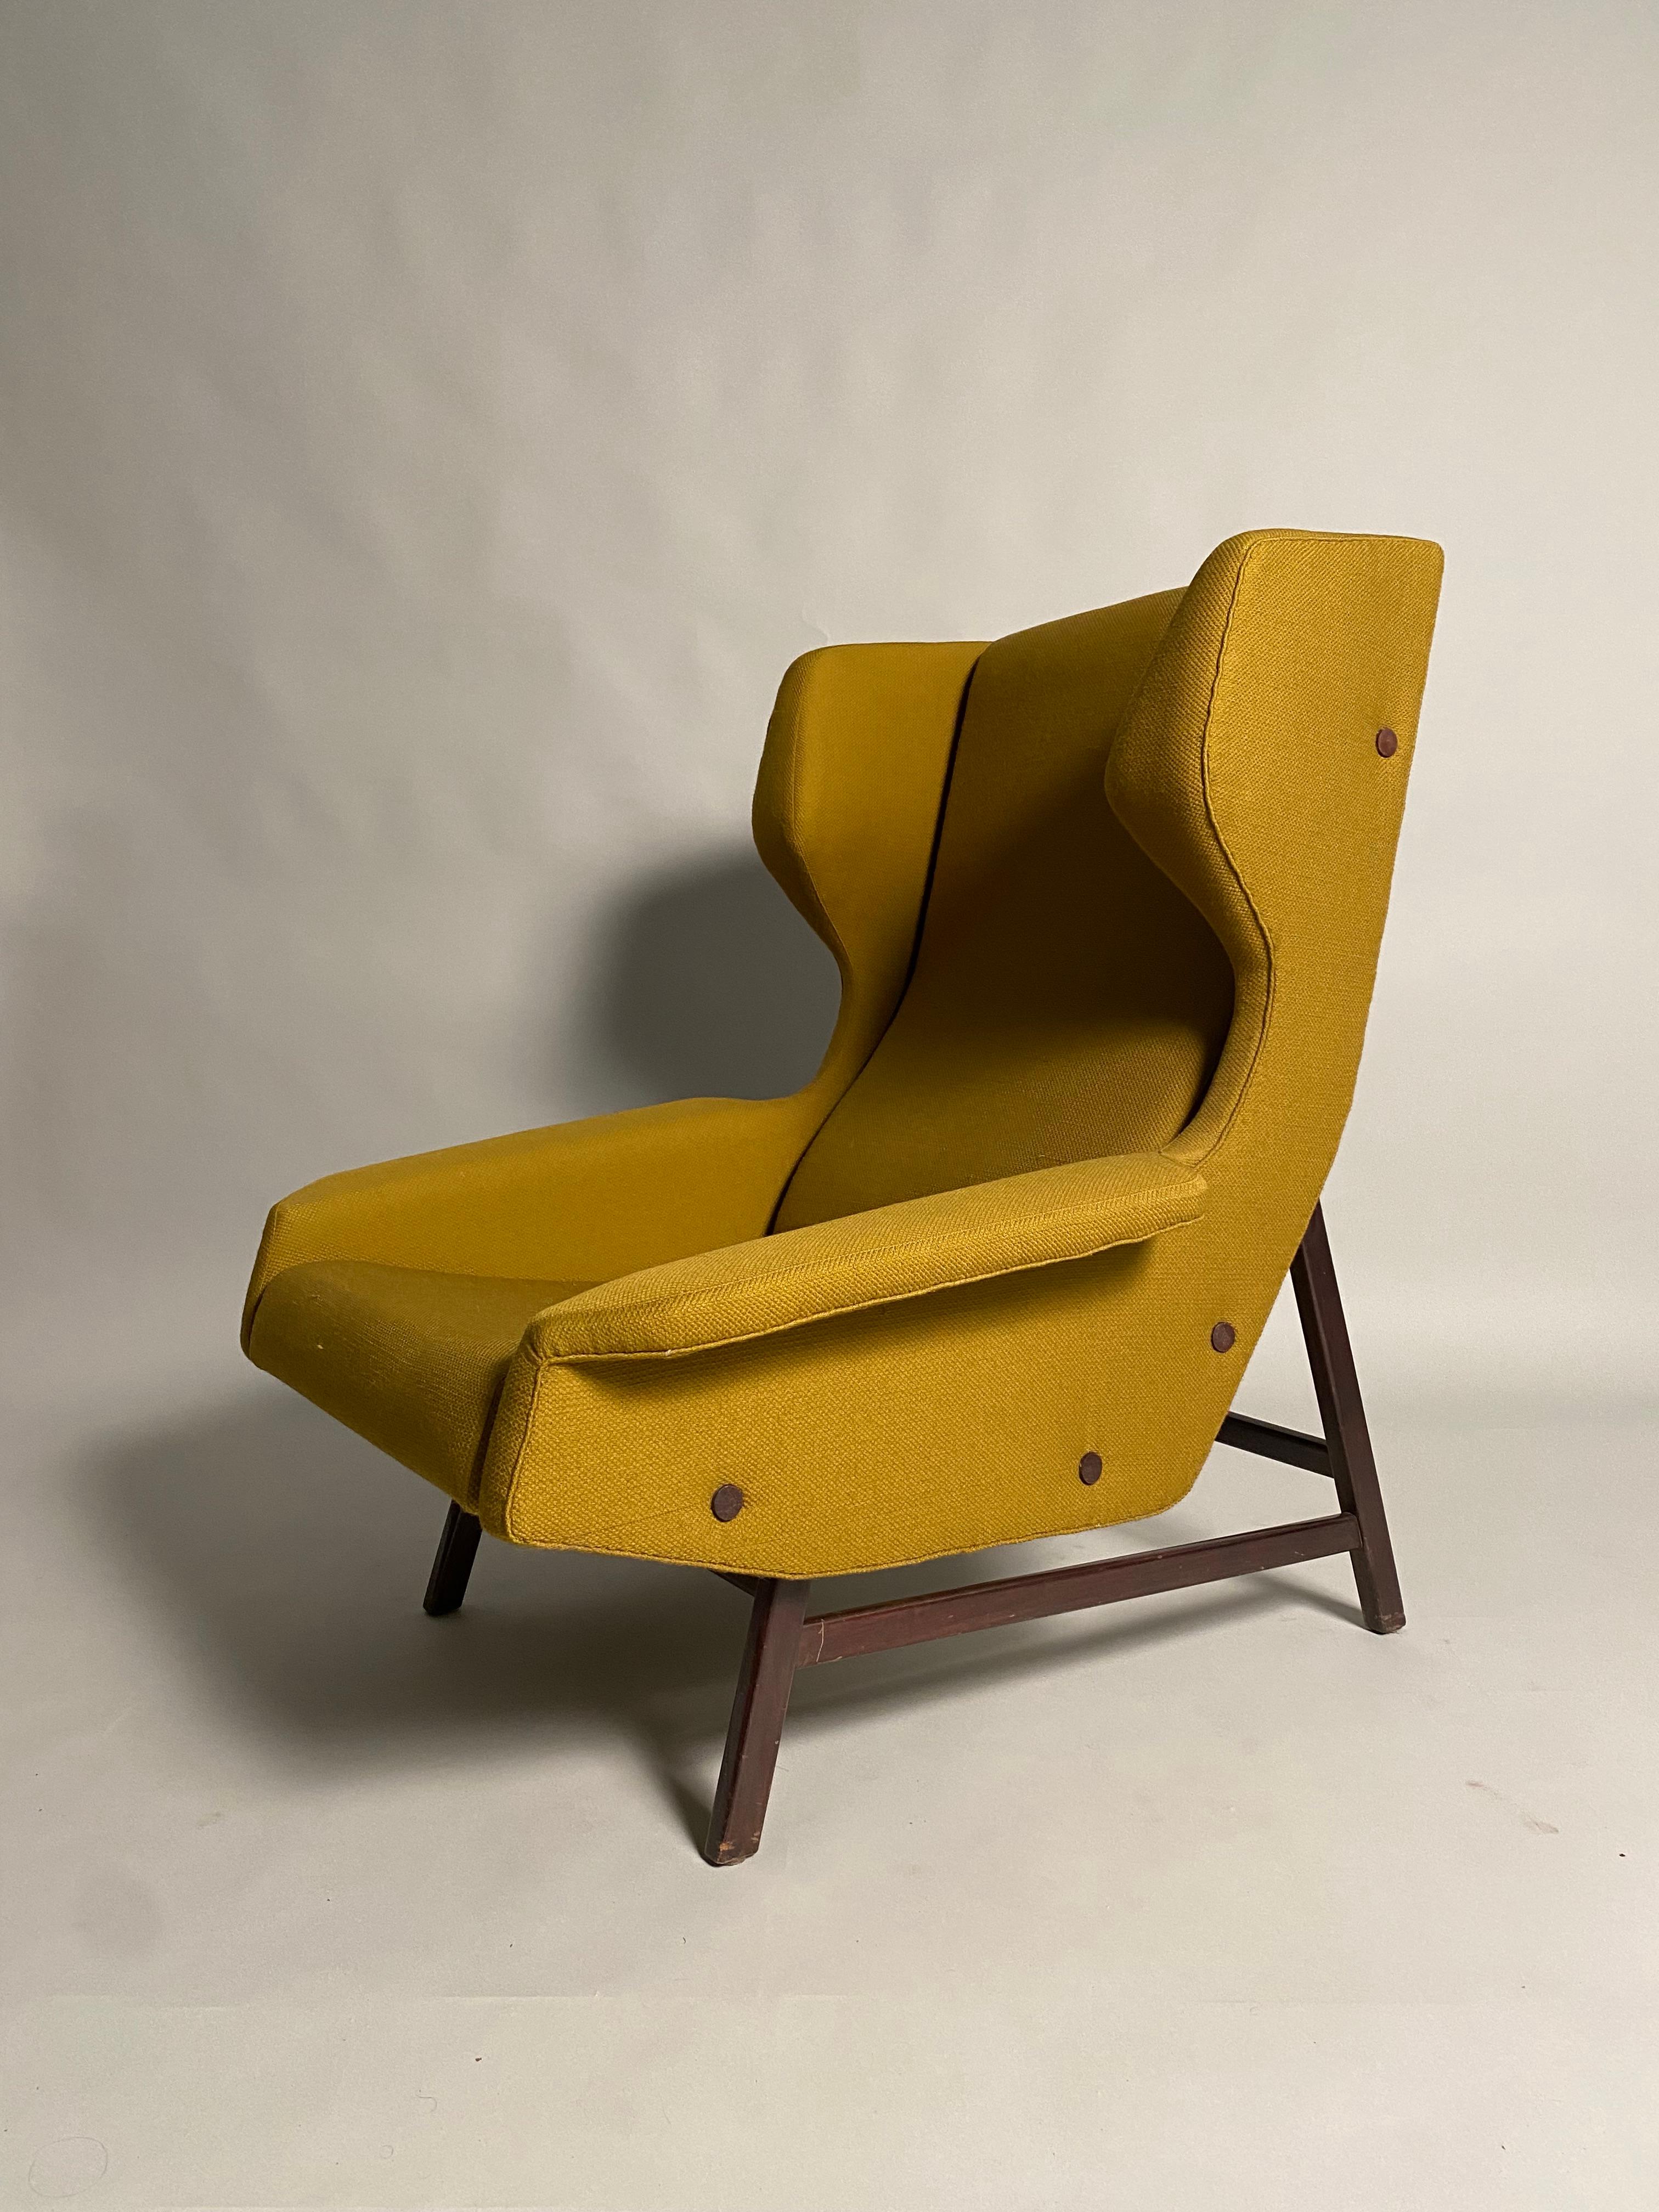 Rare paire de fauteuils Wingback provenant d'un important chalet des Alpes italiennes. Conçu par l'architecte italien Gianfranco Frattini pour la société Cassina en 1959. Le tissu, en excellent état de conservation, est toujours le tissu d'origine